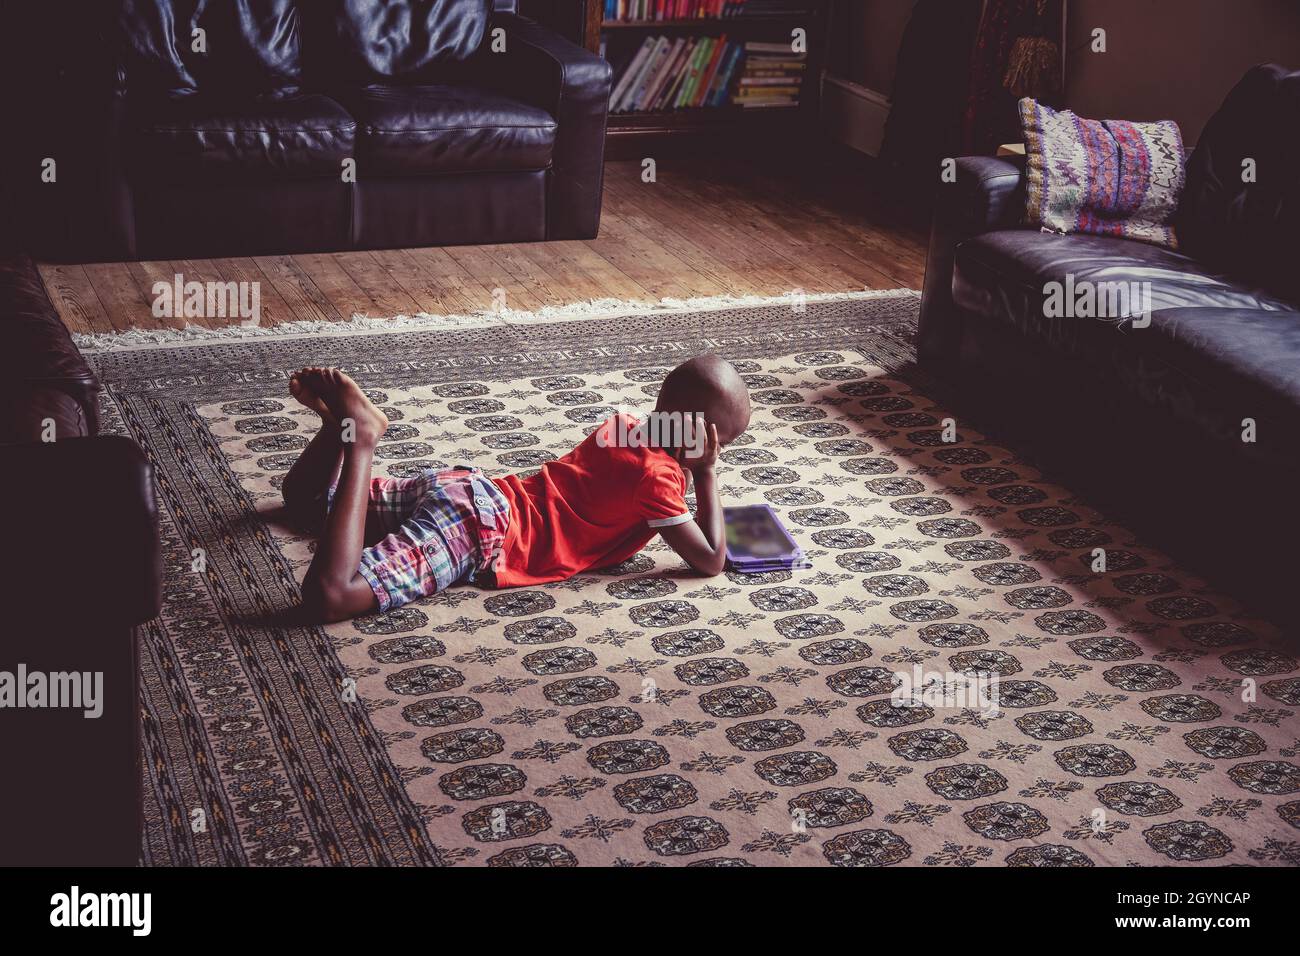 Joven negro, étnicamente diverso, niño usando una tableta en un ambiente relajado hogar Foto de stock